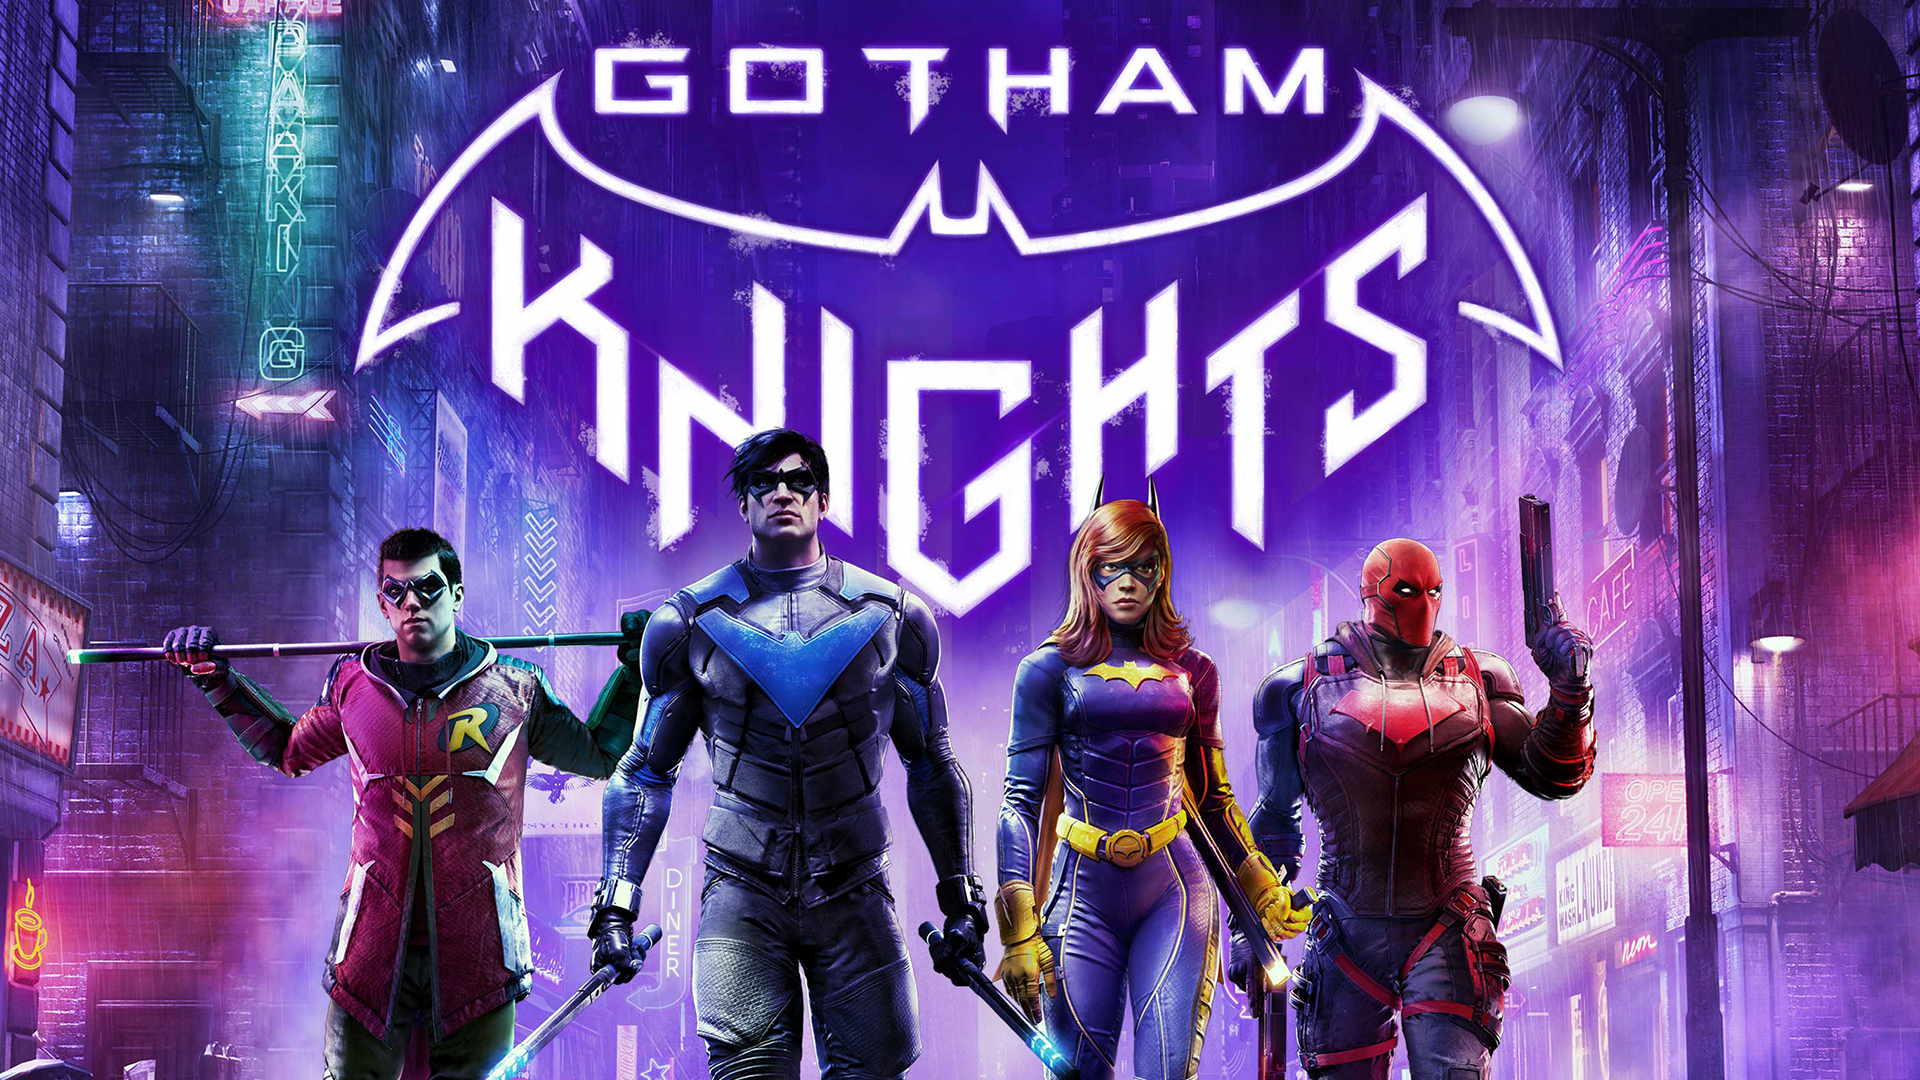 Gotham Knights, PC Steam Game